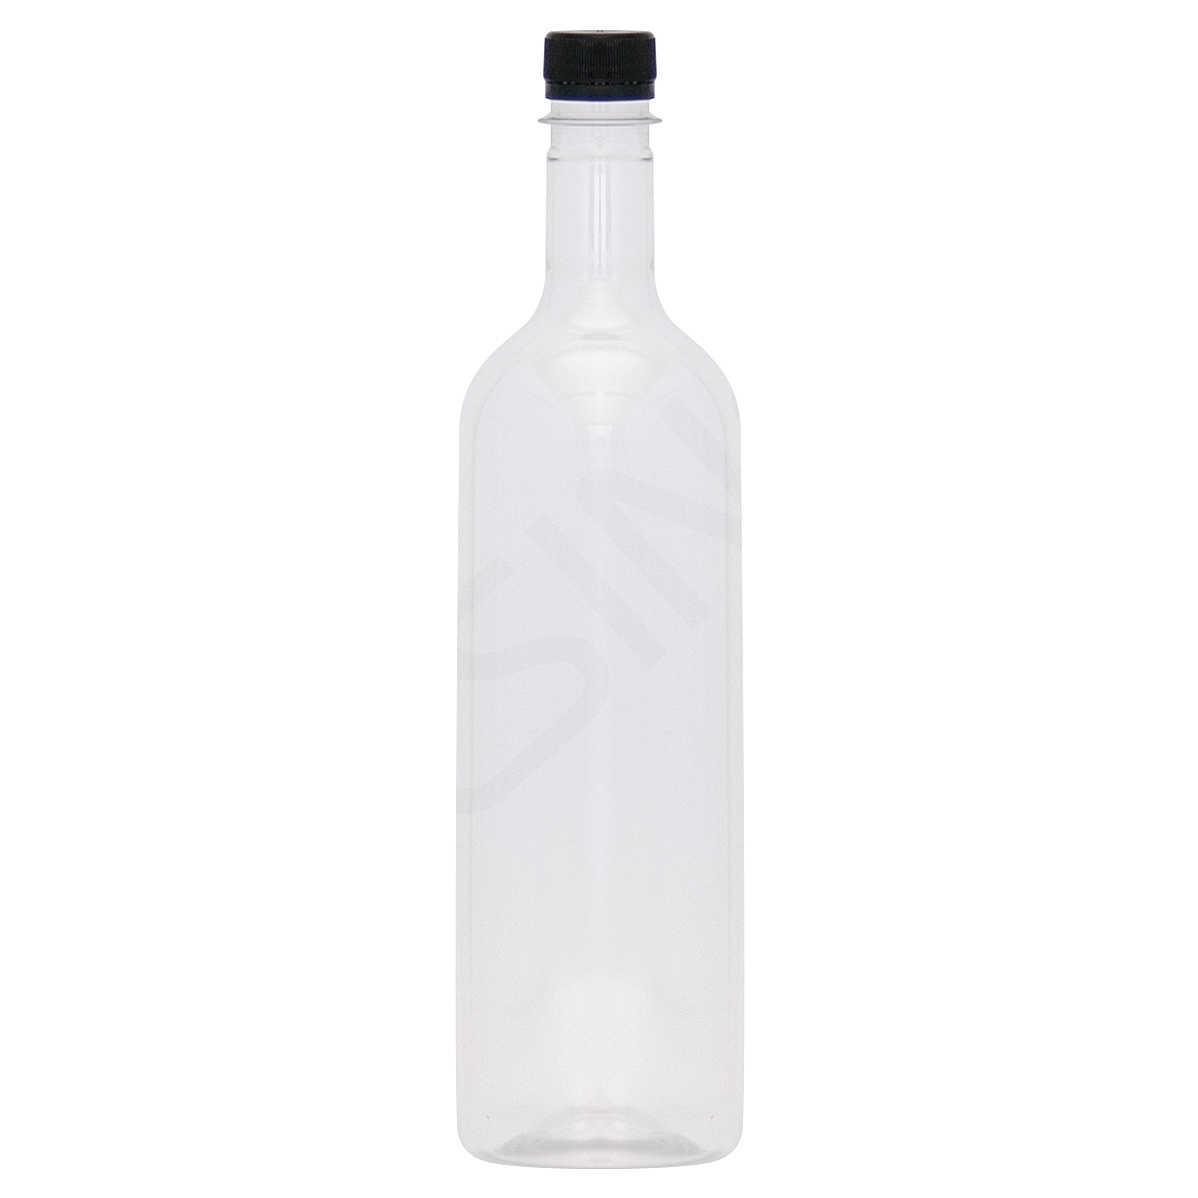 Tappo per Bottiglia PET bianco collo vite- Bordolese 1 L (100 pezzi) Vino